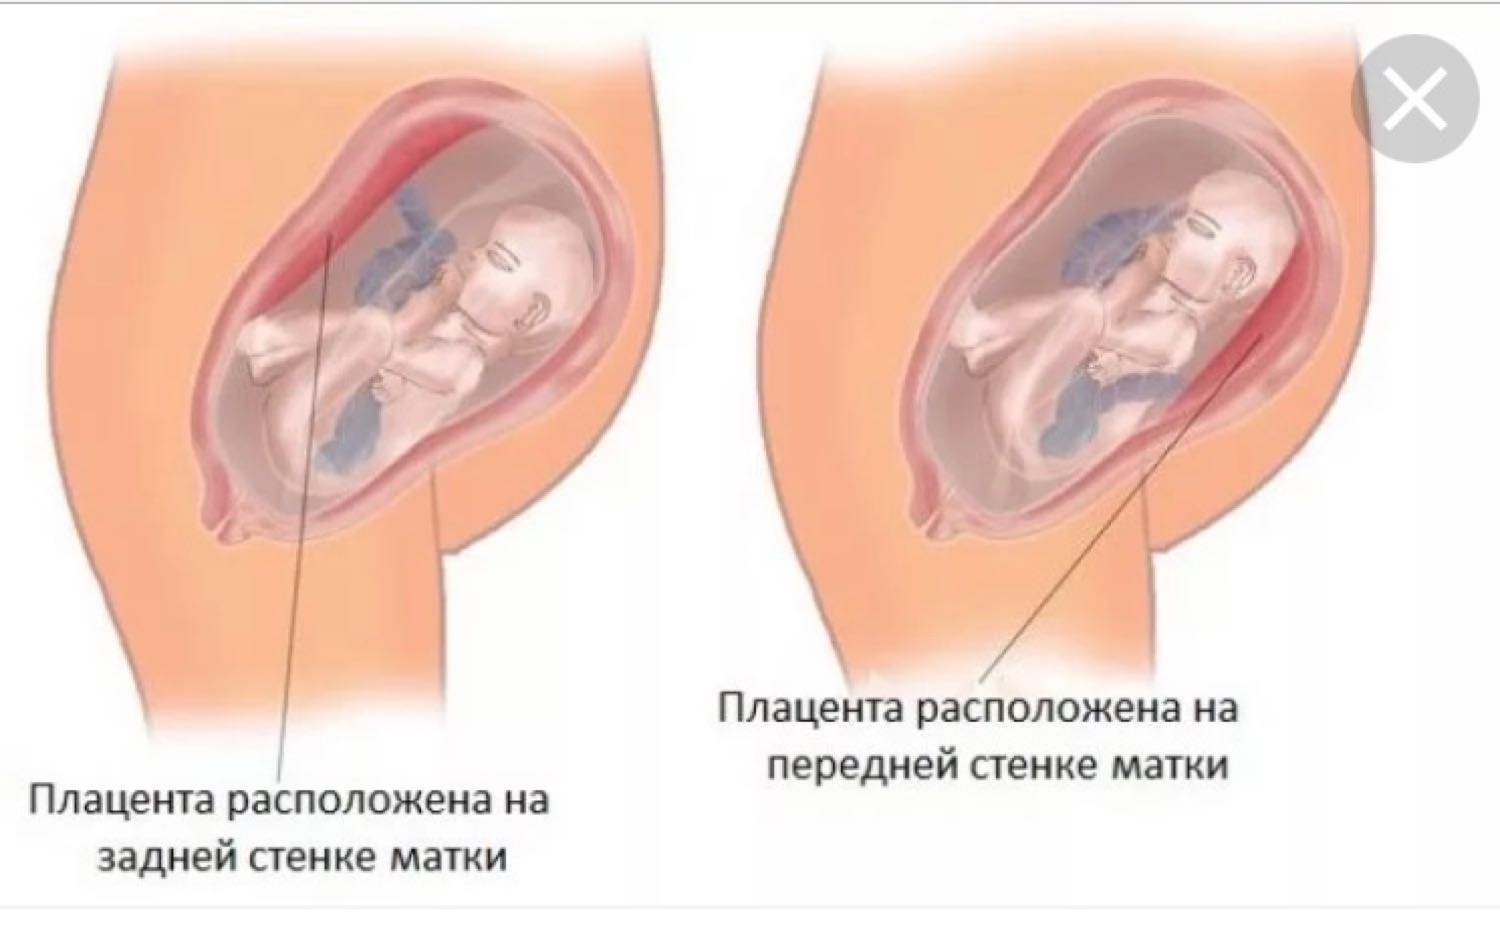 оргазм на первом триместре беременности фото 89